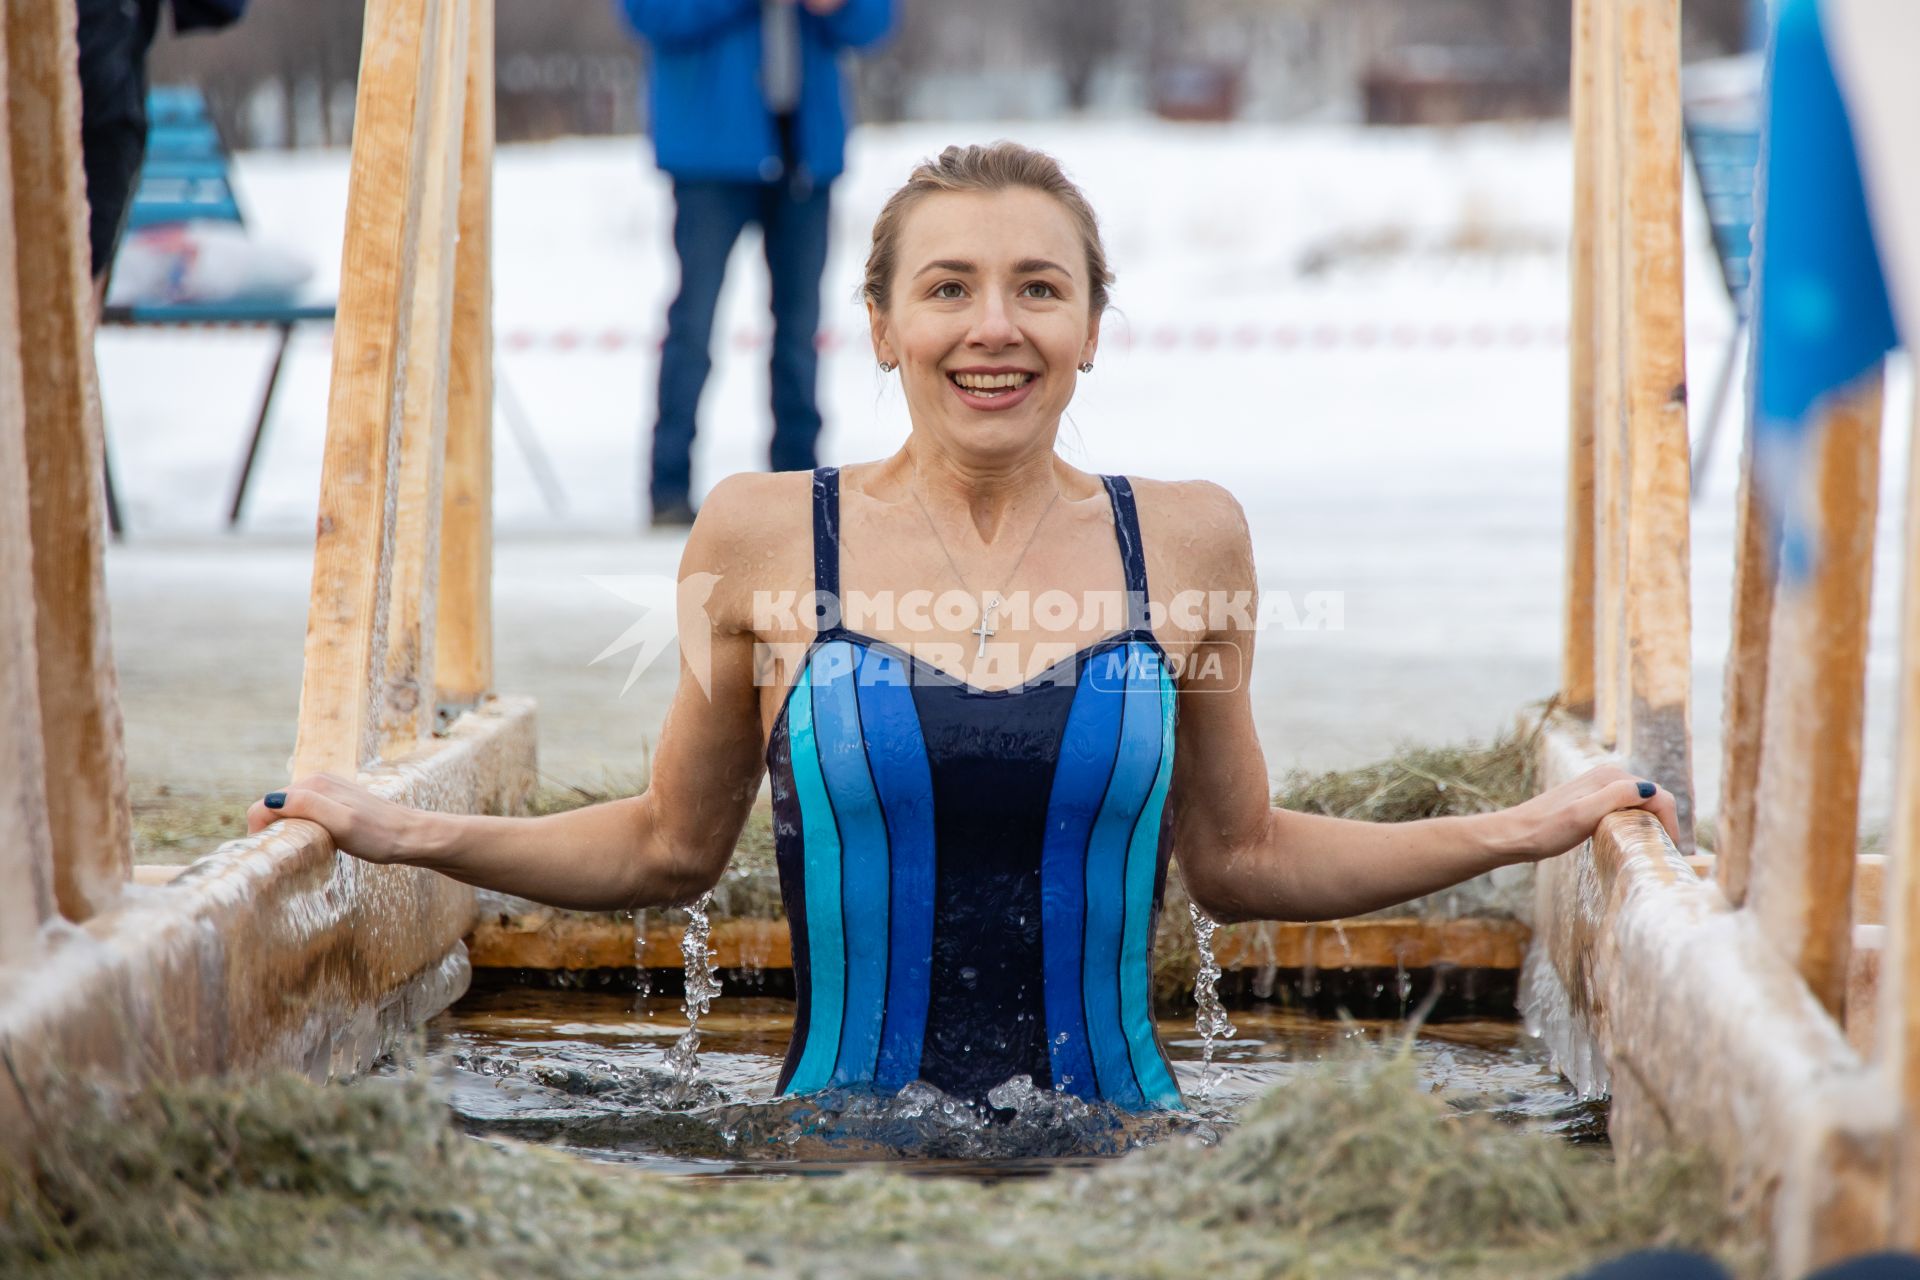 Челябинск. Девушка окунается в купели во время крещенских купаний.